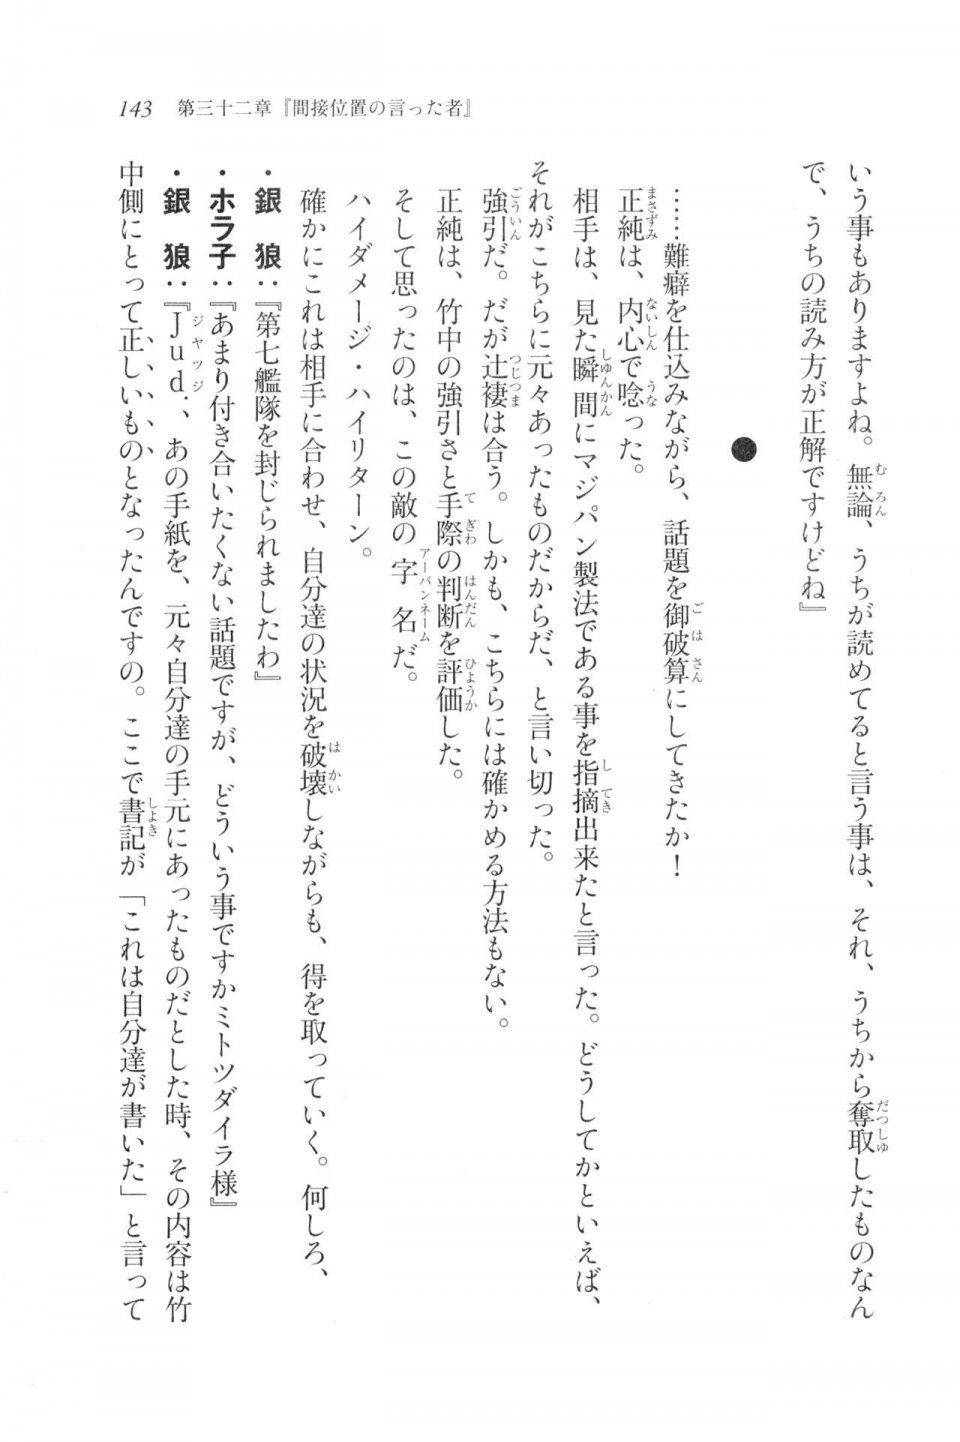 Kyoukai Senjou no Horizon LN Vol 20(8B) - Photo #143